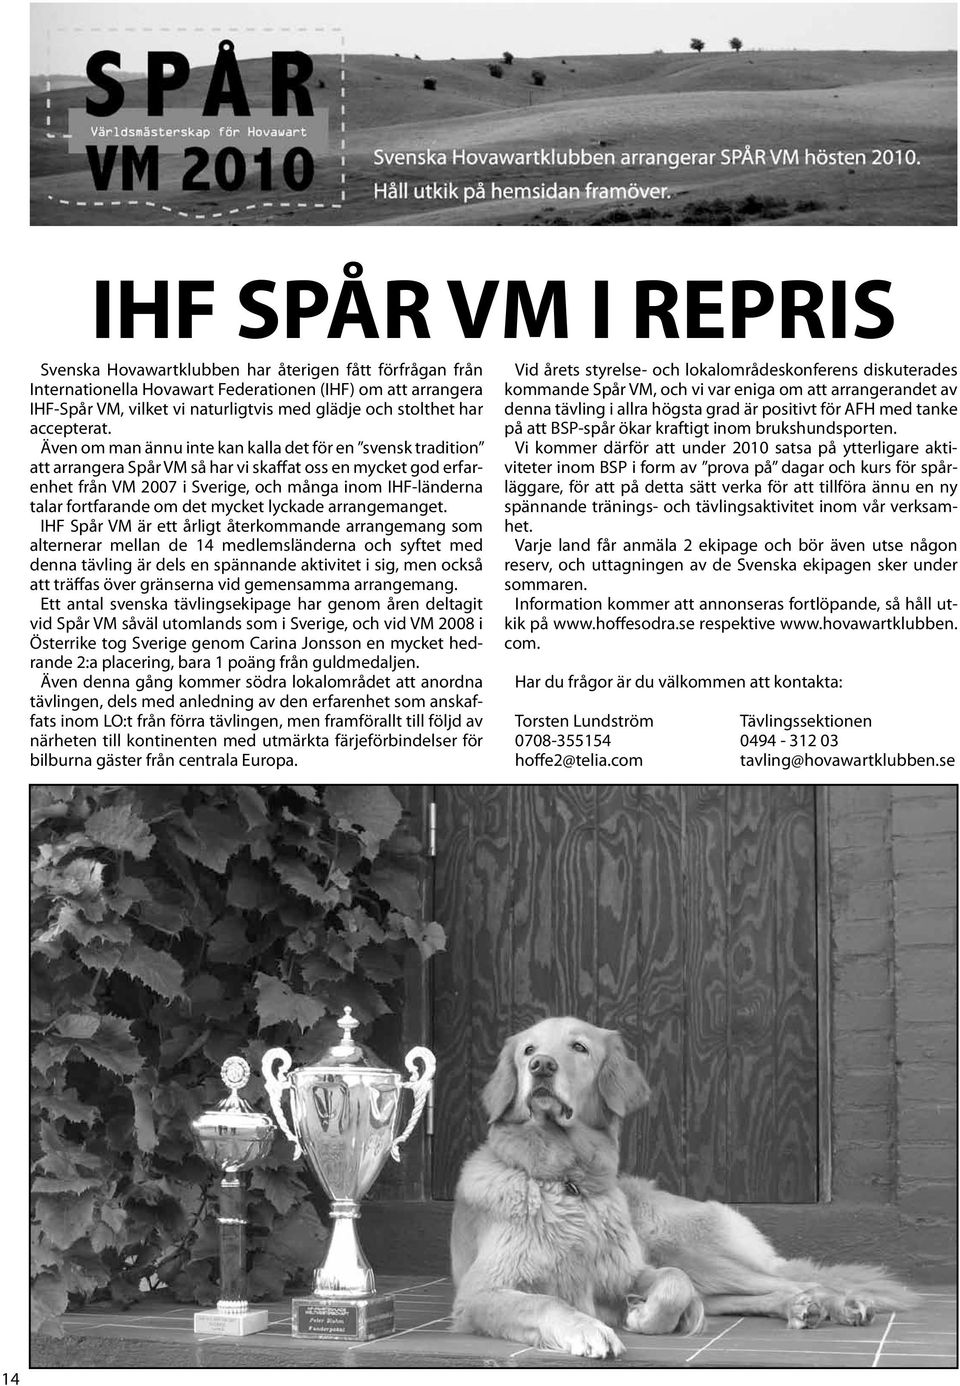 Även om man ännu inte kan kalla det för en svensk tradition att arrangera Spår VM så har vi skaffat oss en mycket god erfarenhet från VM 2007 i Sverige, och många inom IHF-länderna talar fortfarande